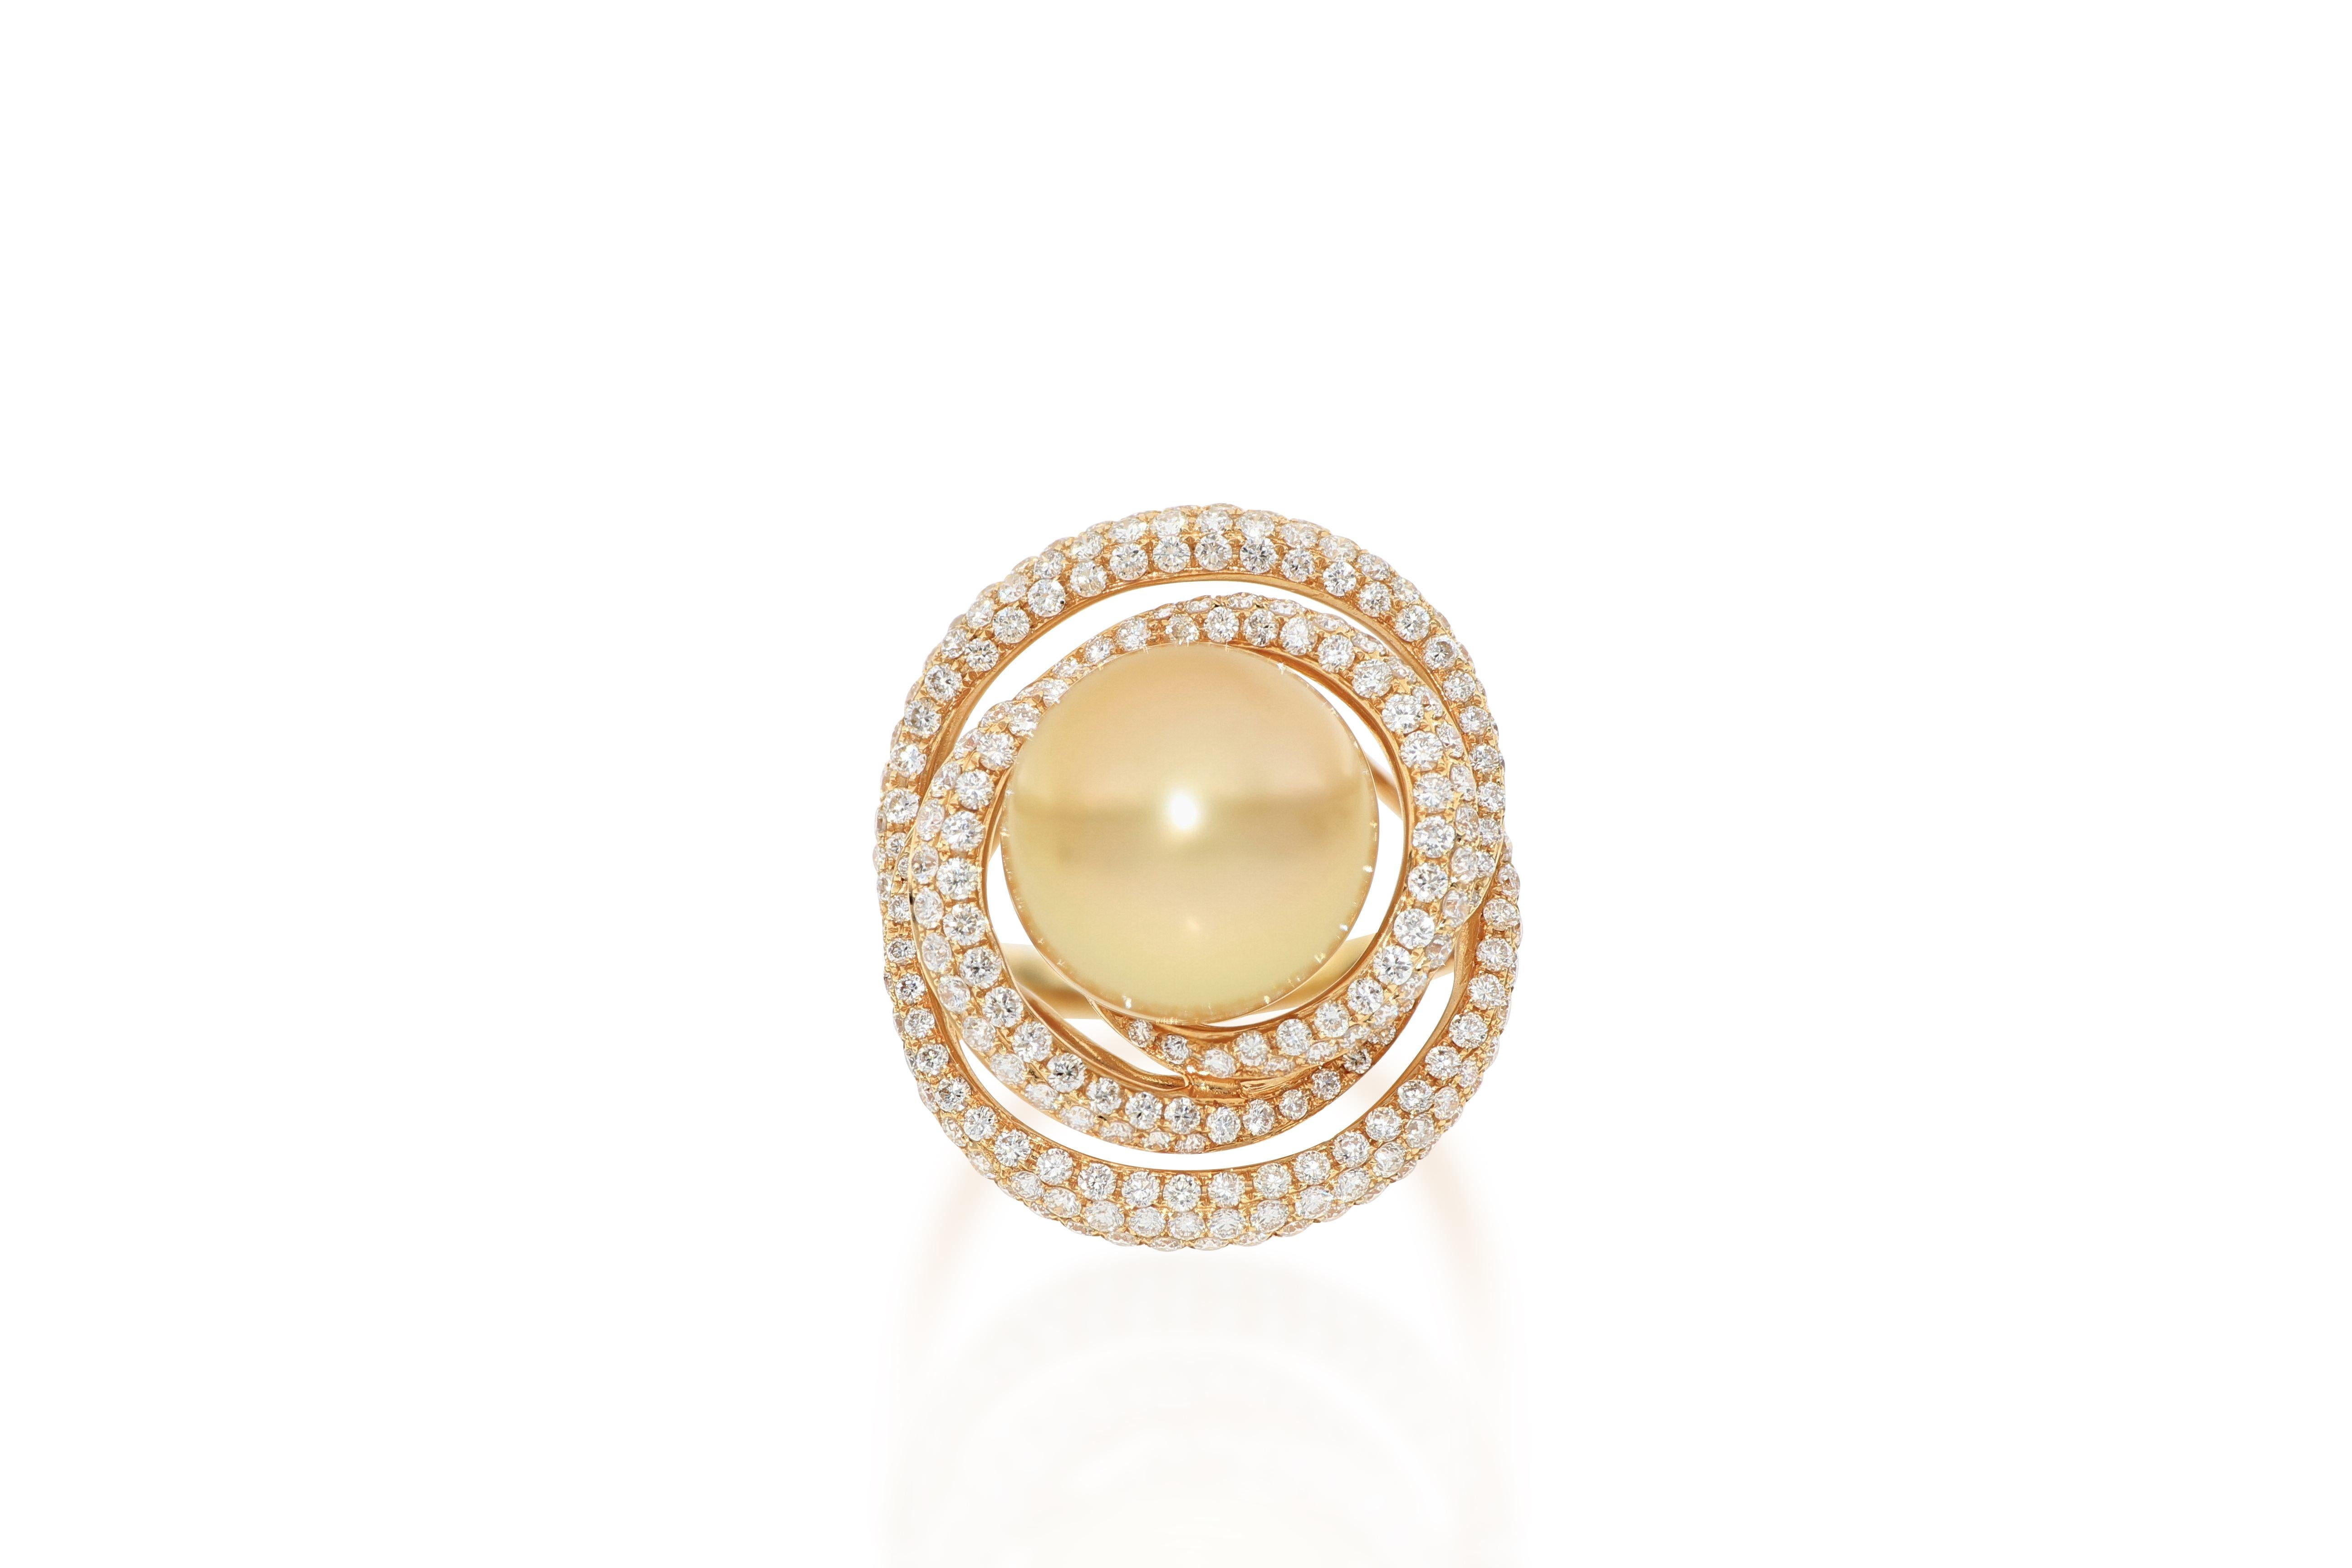 Der elegante Ring mit einer fabelhaften goldenen Südseeperle (13 mm) in der Mitte ist umgeben von Diamanten im Brillantschliff mit einem Gewicht von 1,88 Karat, gefasst in 18 Karat Roségold.
Das Unternehmen wurde vor anderthalb Jahrhunderten in